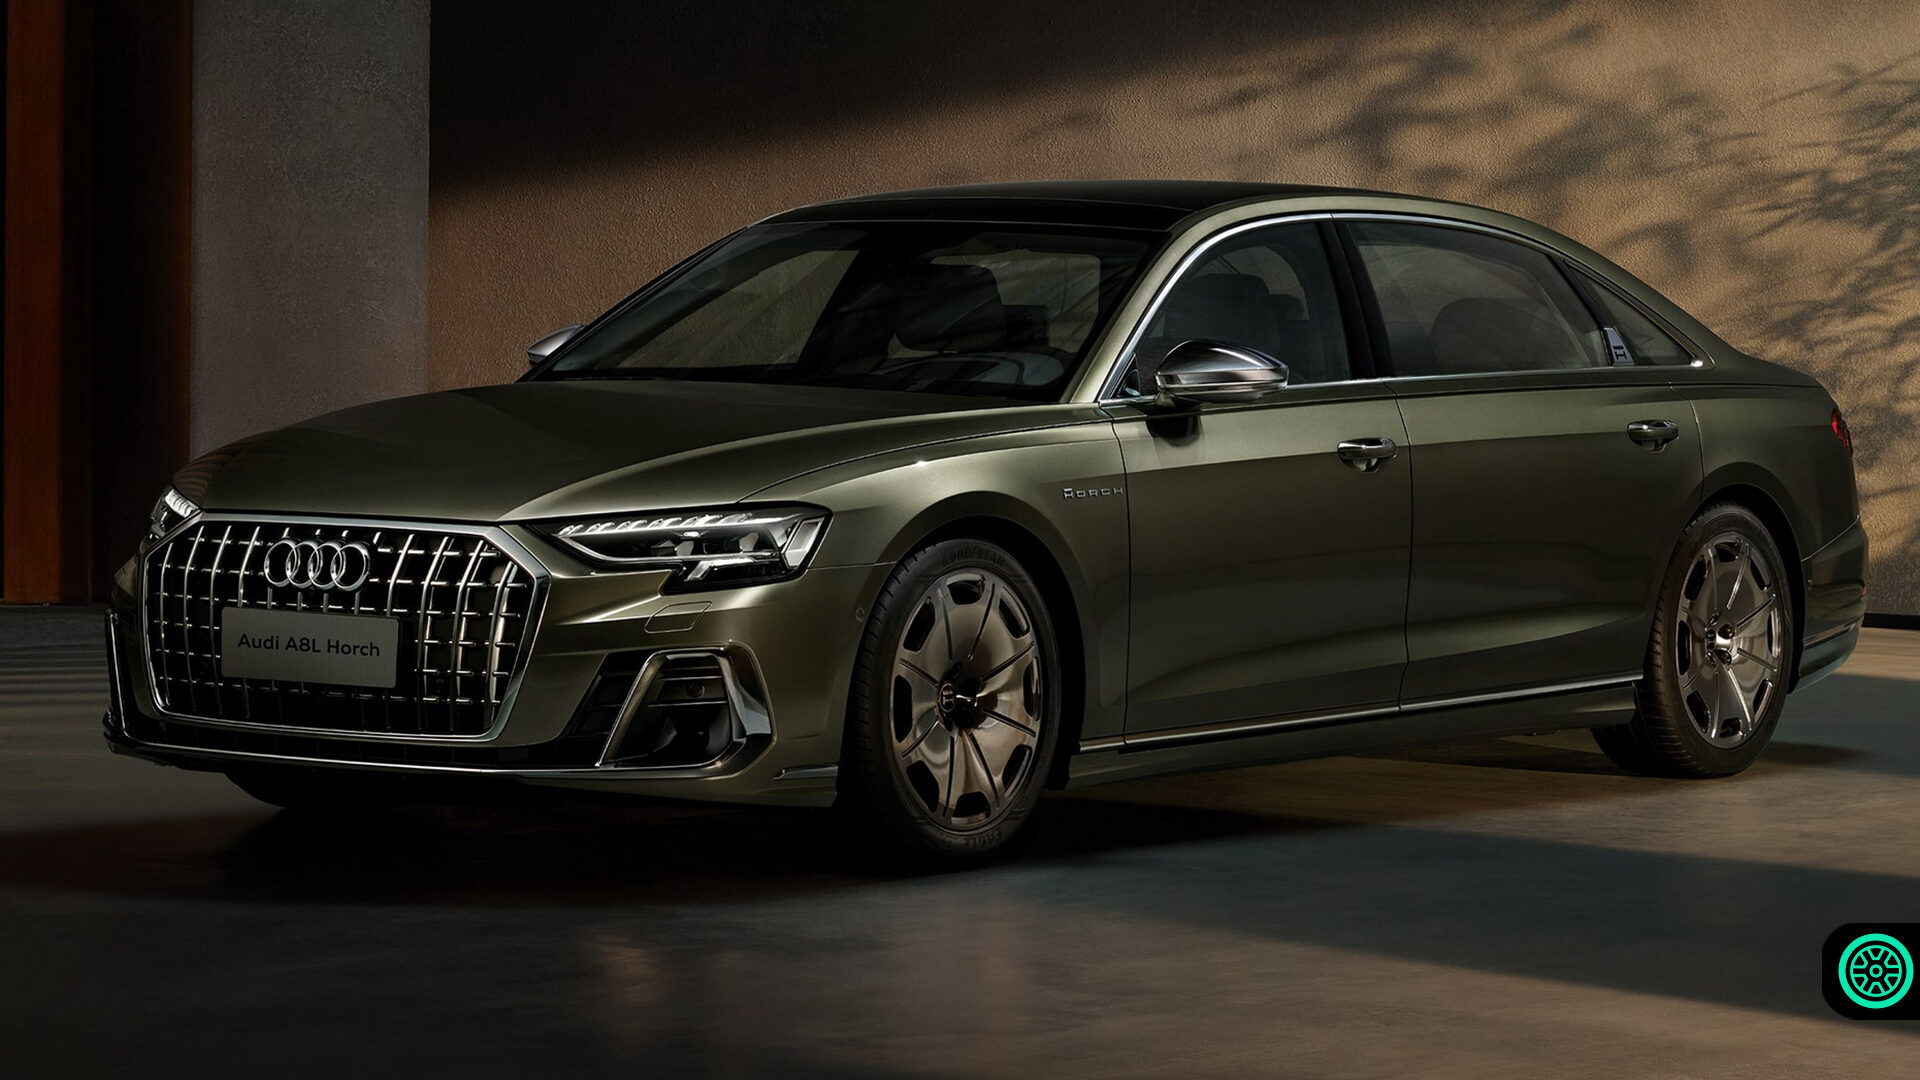 Audi A8 L Horch Founders Edition resmi olarak tanıtıldı! 1